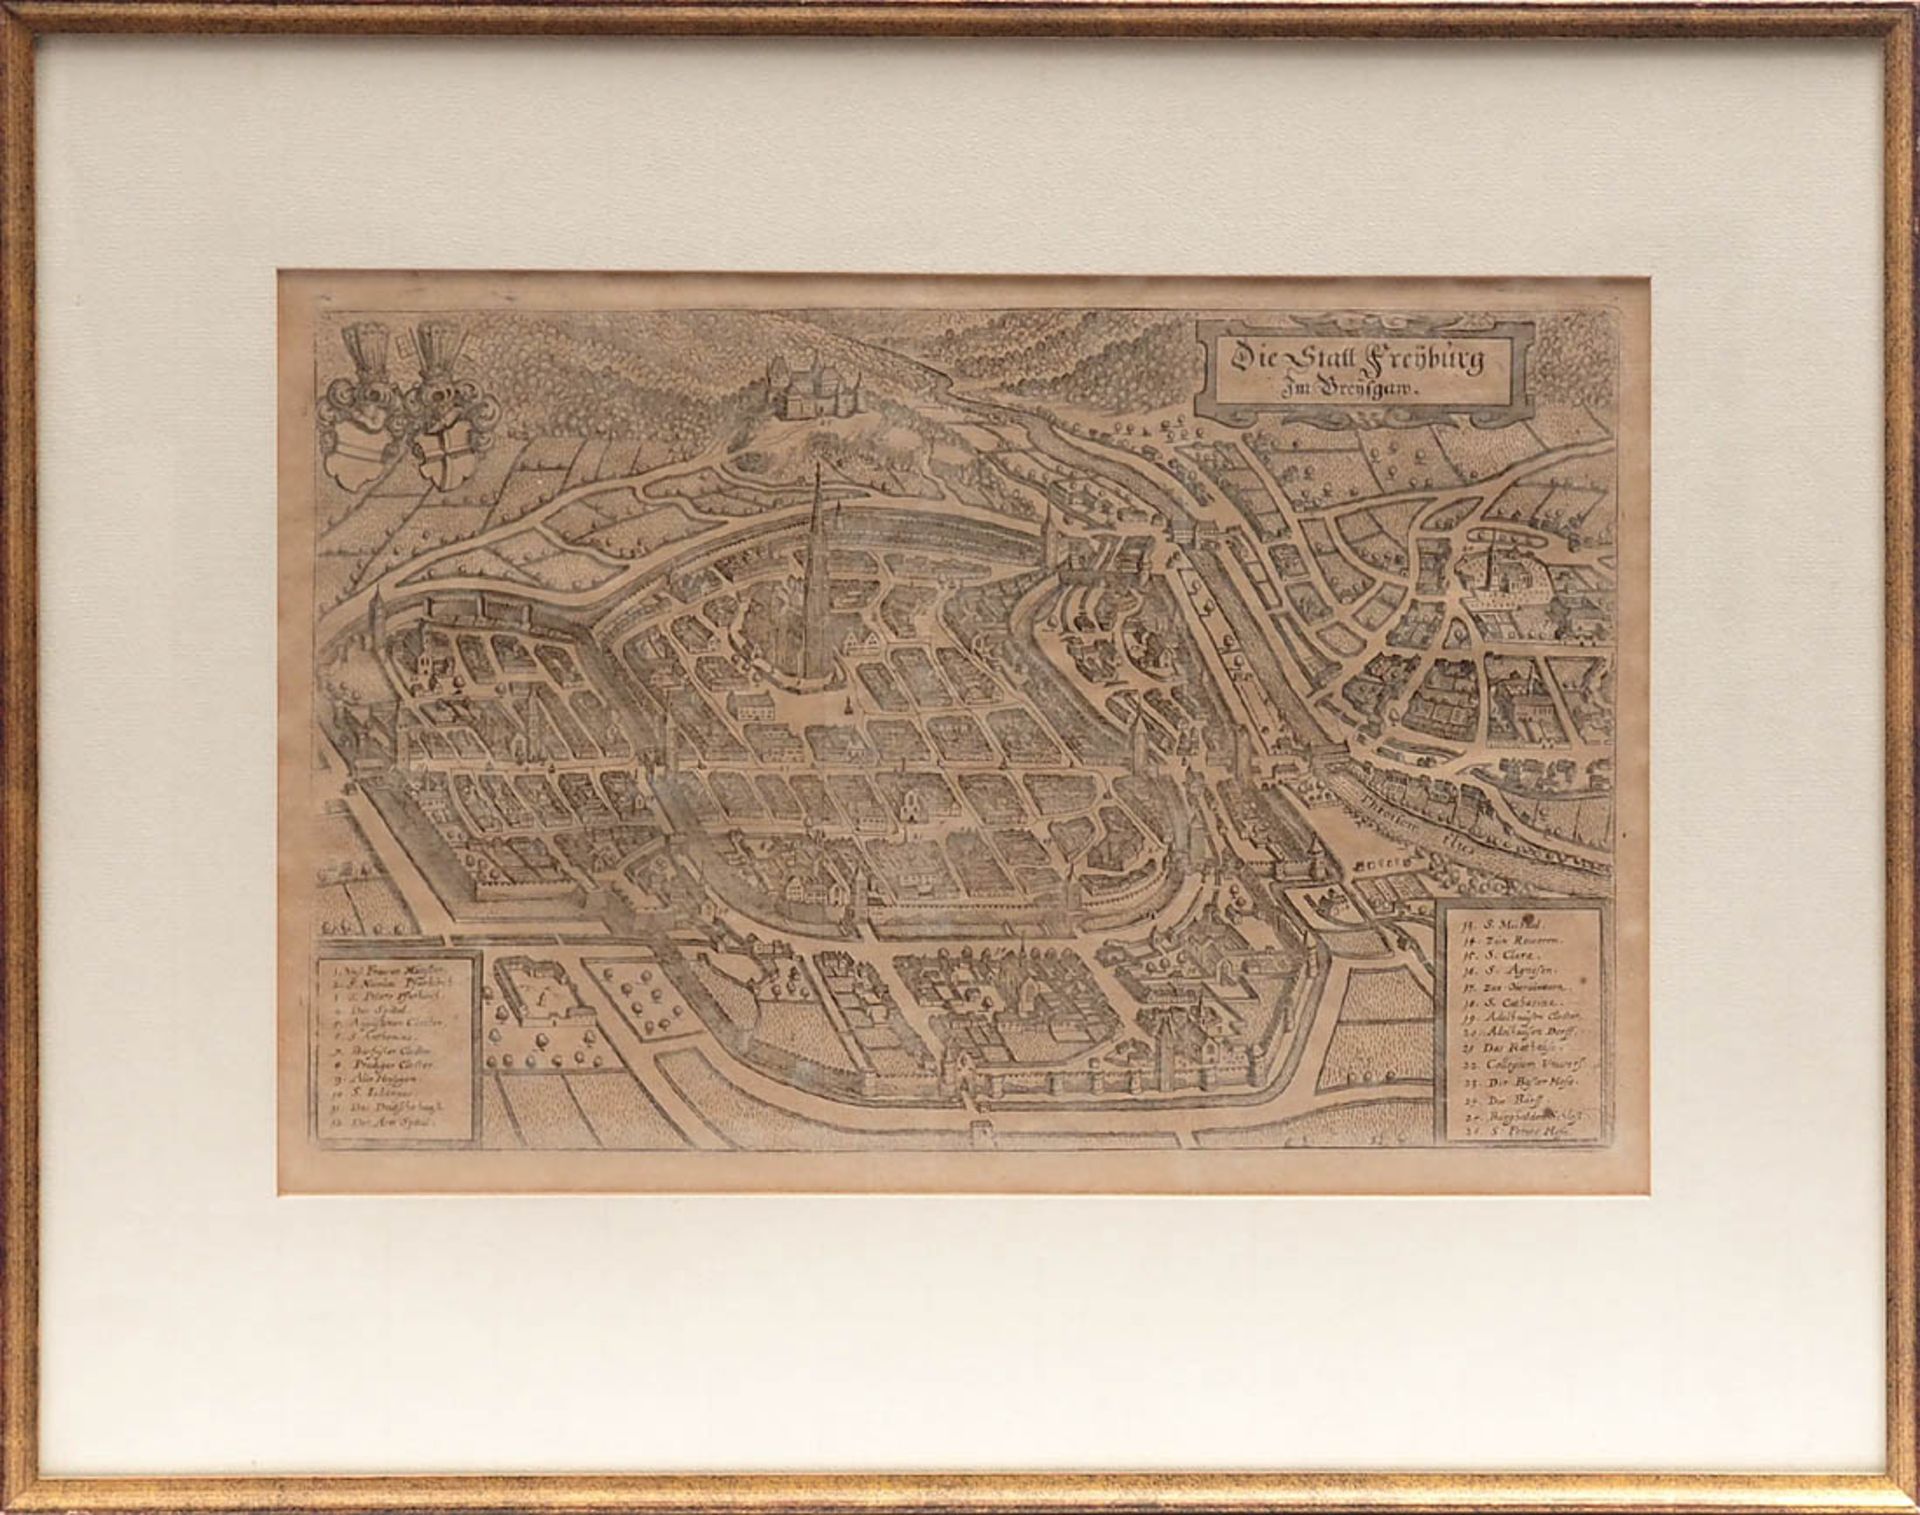 Zwei Graphiken Eine Karte von Flandern, wohl aus Sebastian Münster (1489 - 1552): "Von dem teutschen